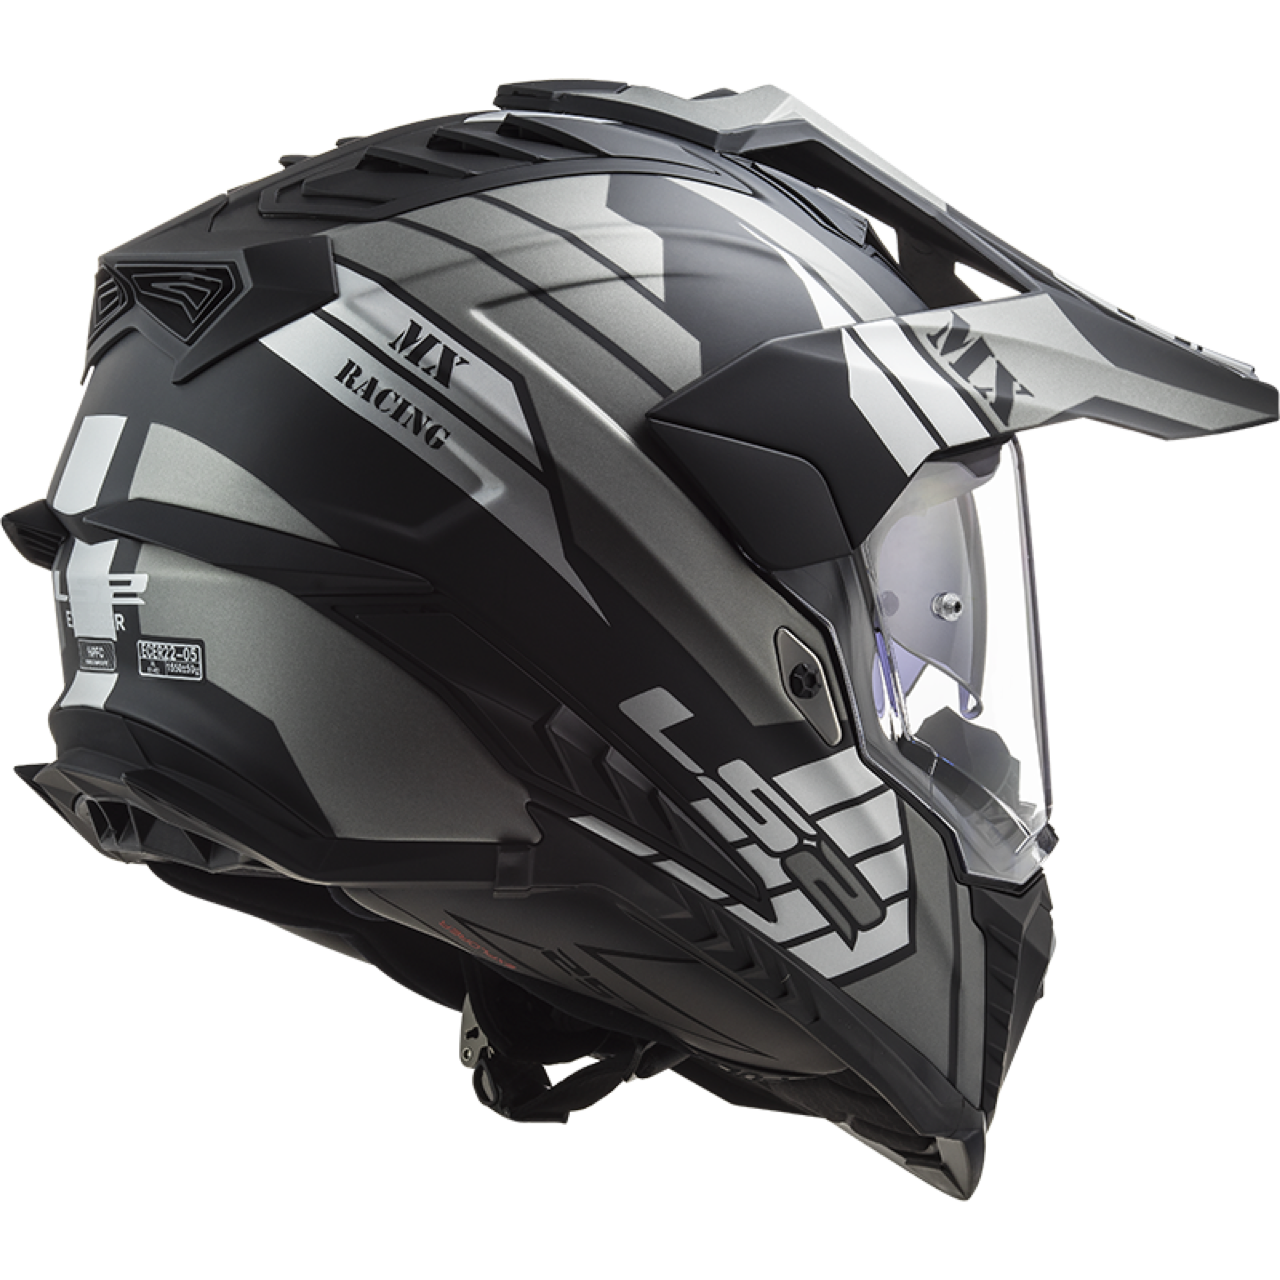 LS2 Helmets - caschi e guanti 2021 